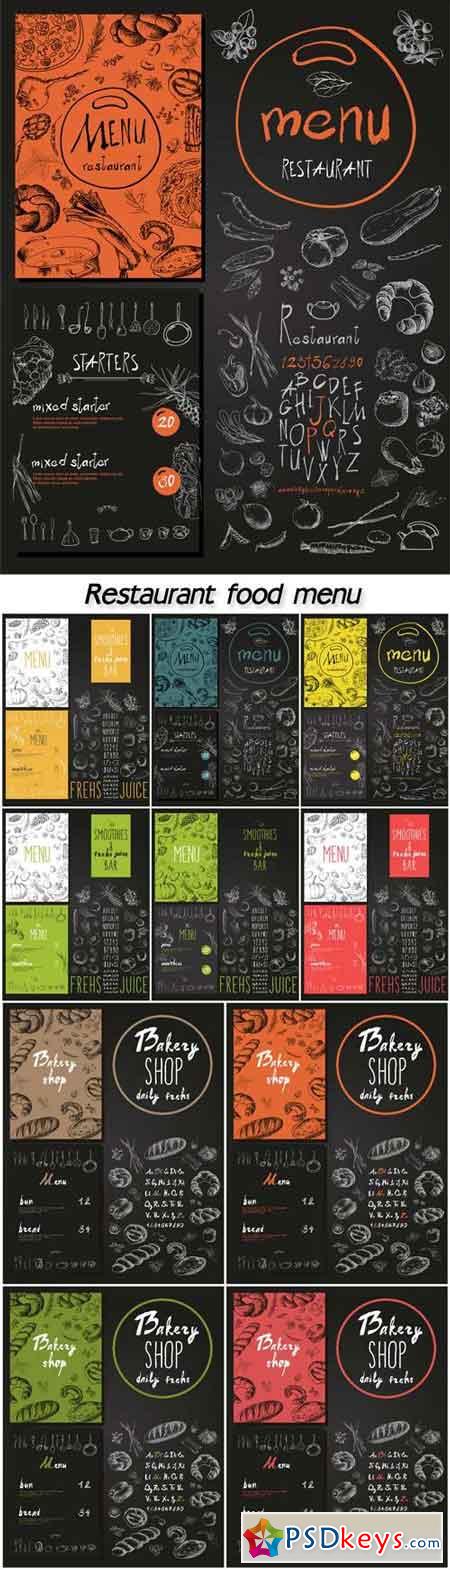 Restaurant food menu set vintage design with chalkboard